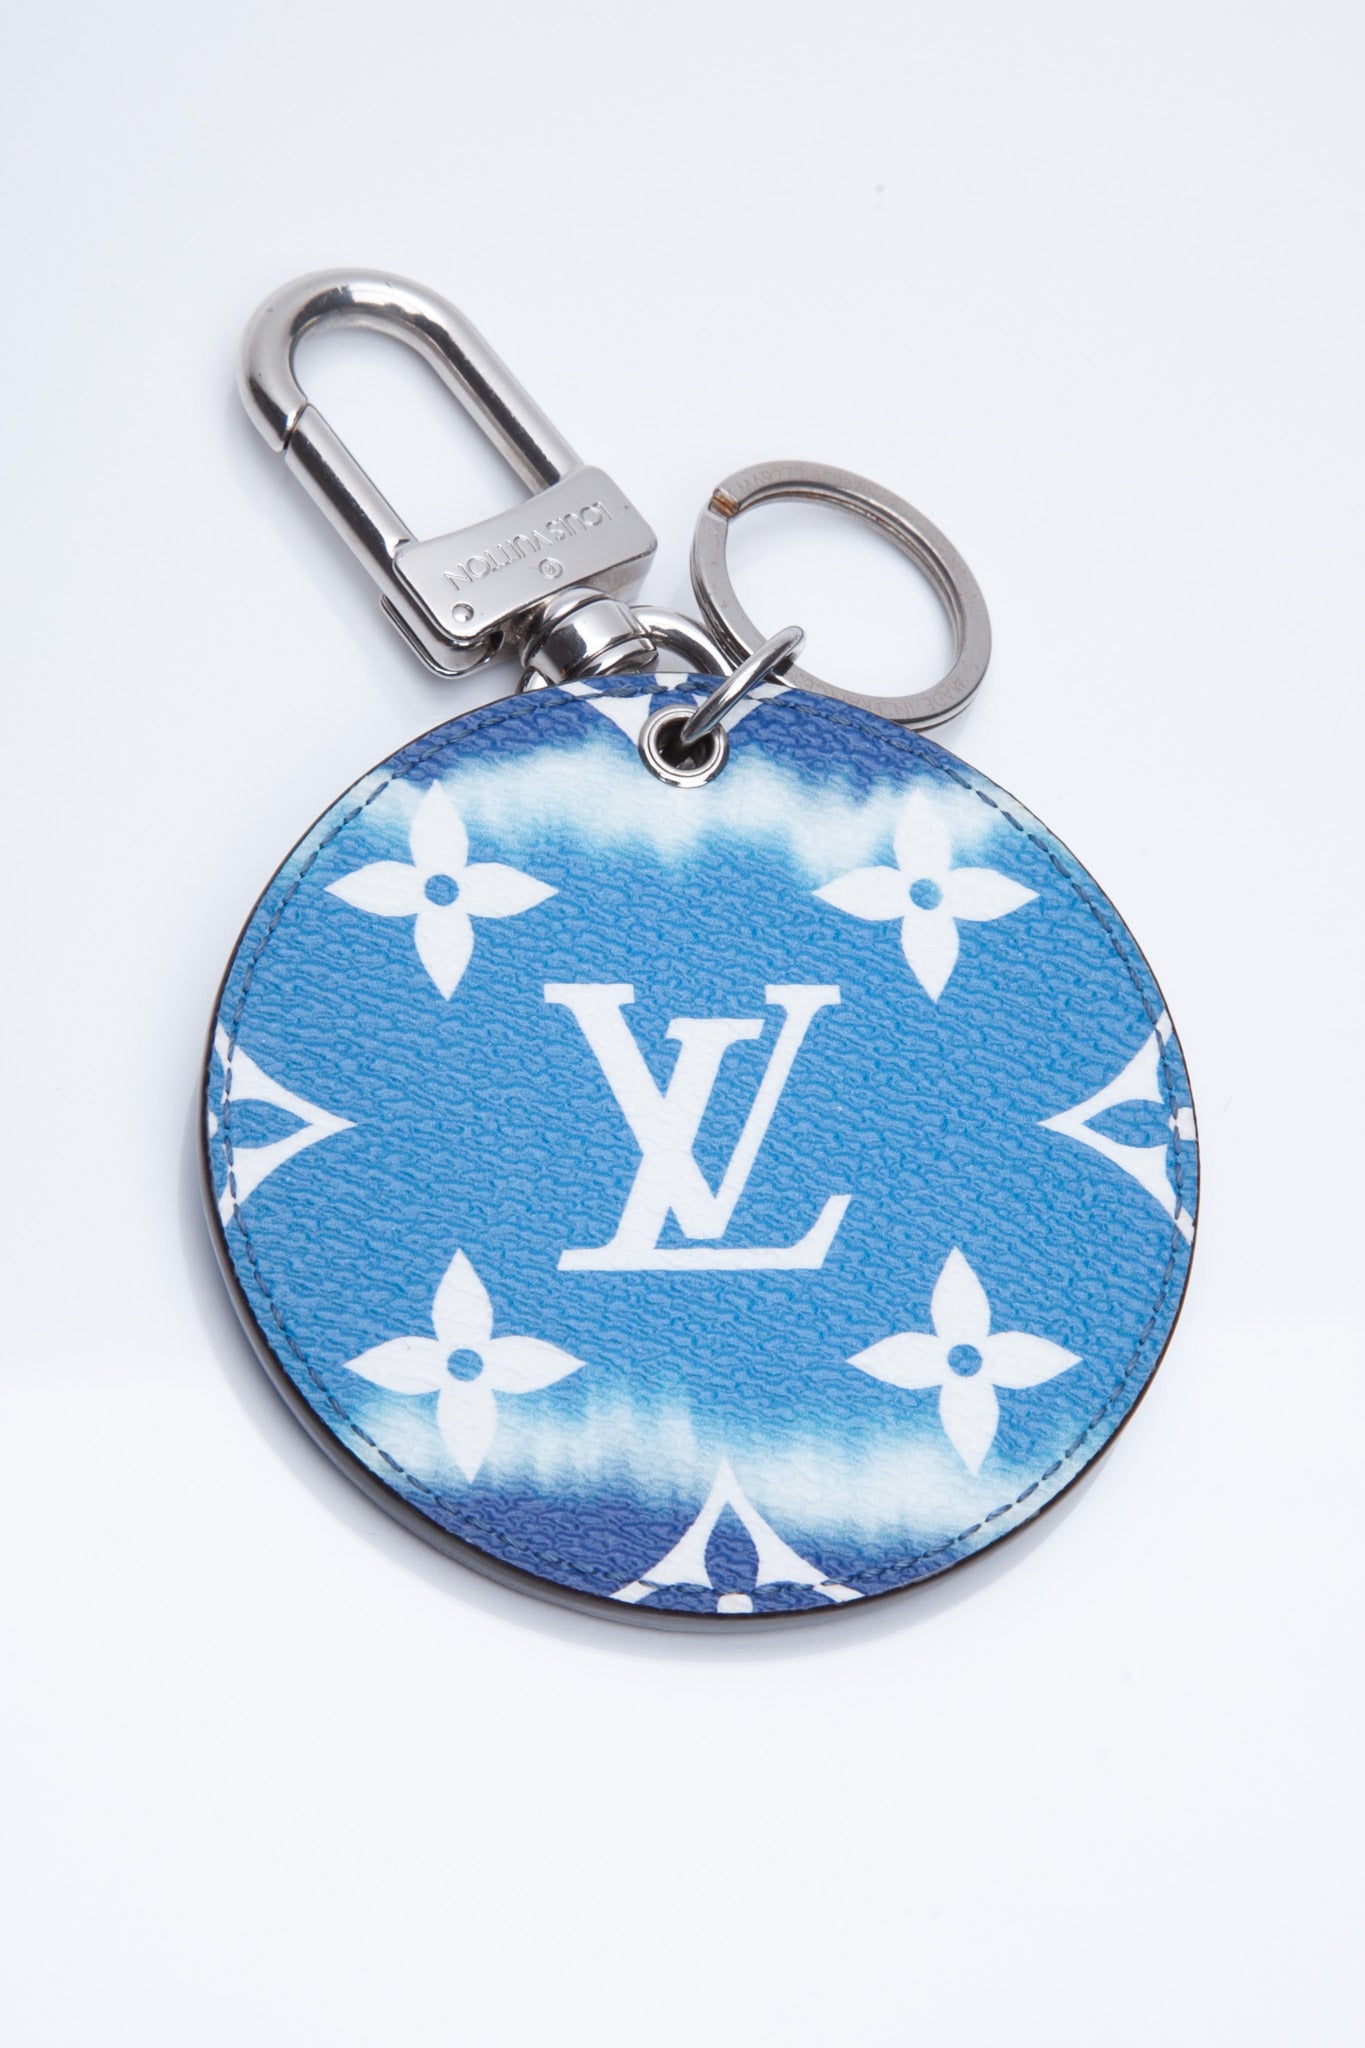 LOUIS VUITTON Monogram Escale Bag Charm Key Holder Blue 547409